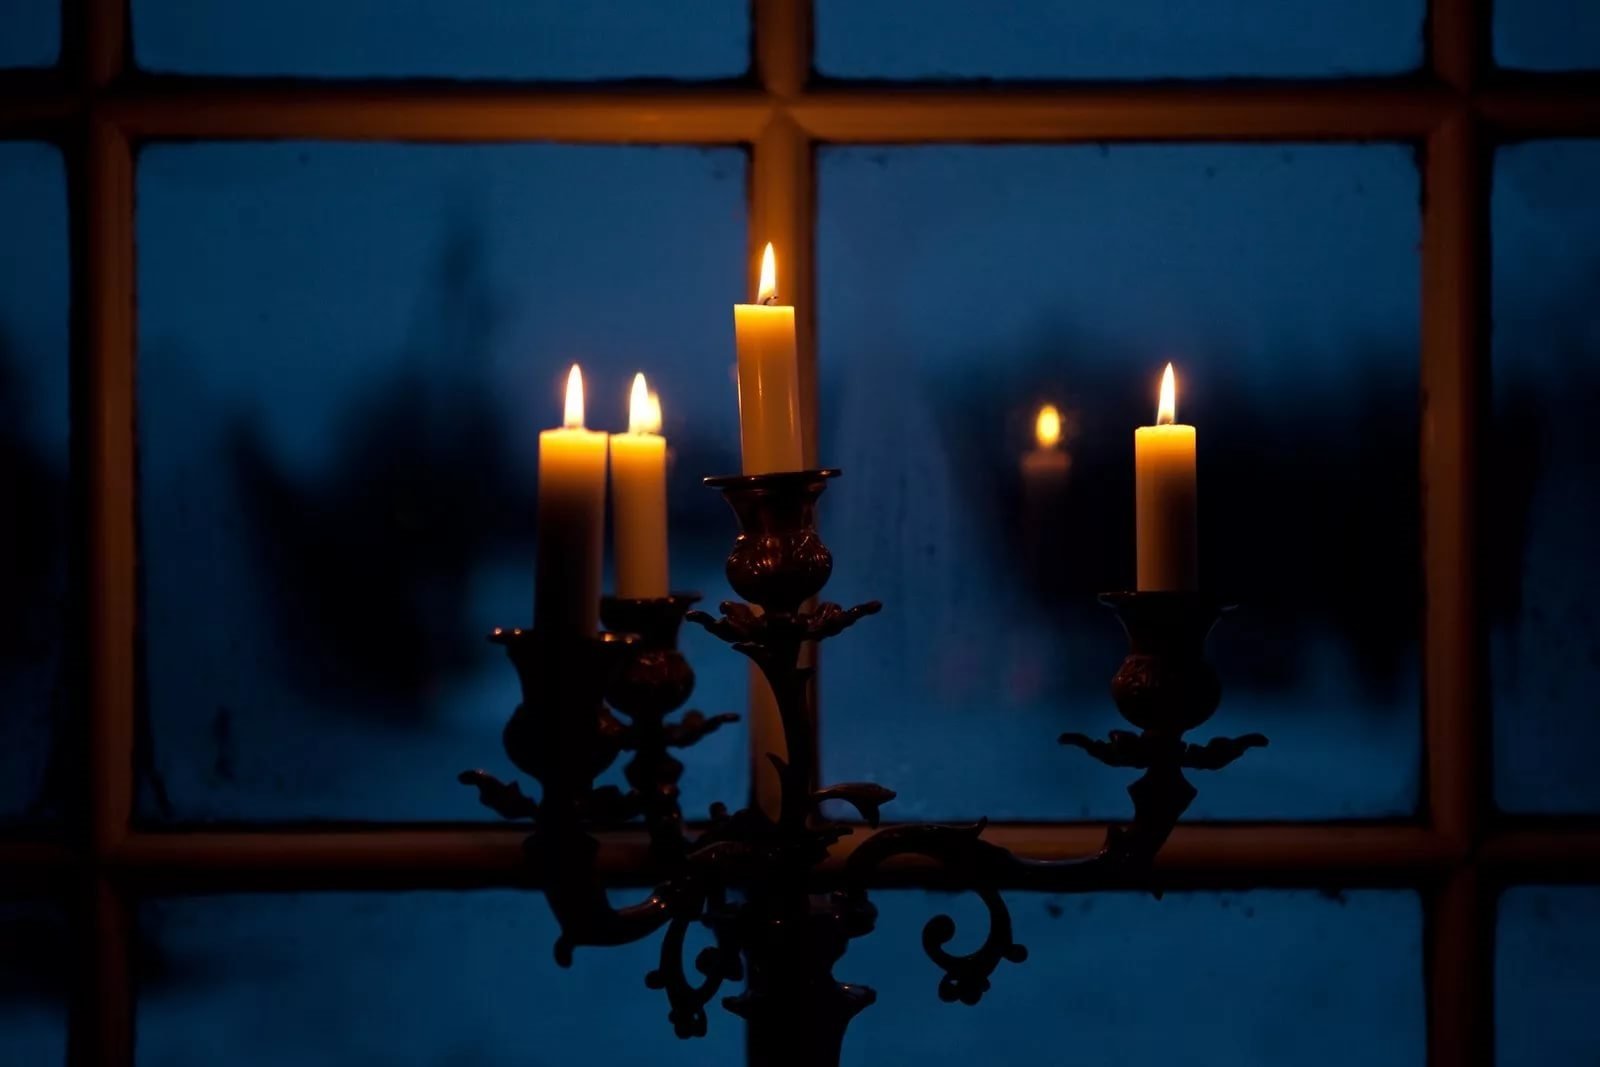 Погасли в окнах свечи. Свеча в окне. Горящие свечи в канделябре. Отражение свечи в окне. Свеча в ночи.